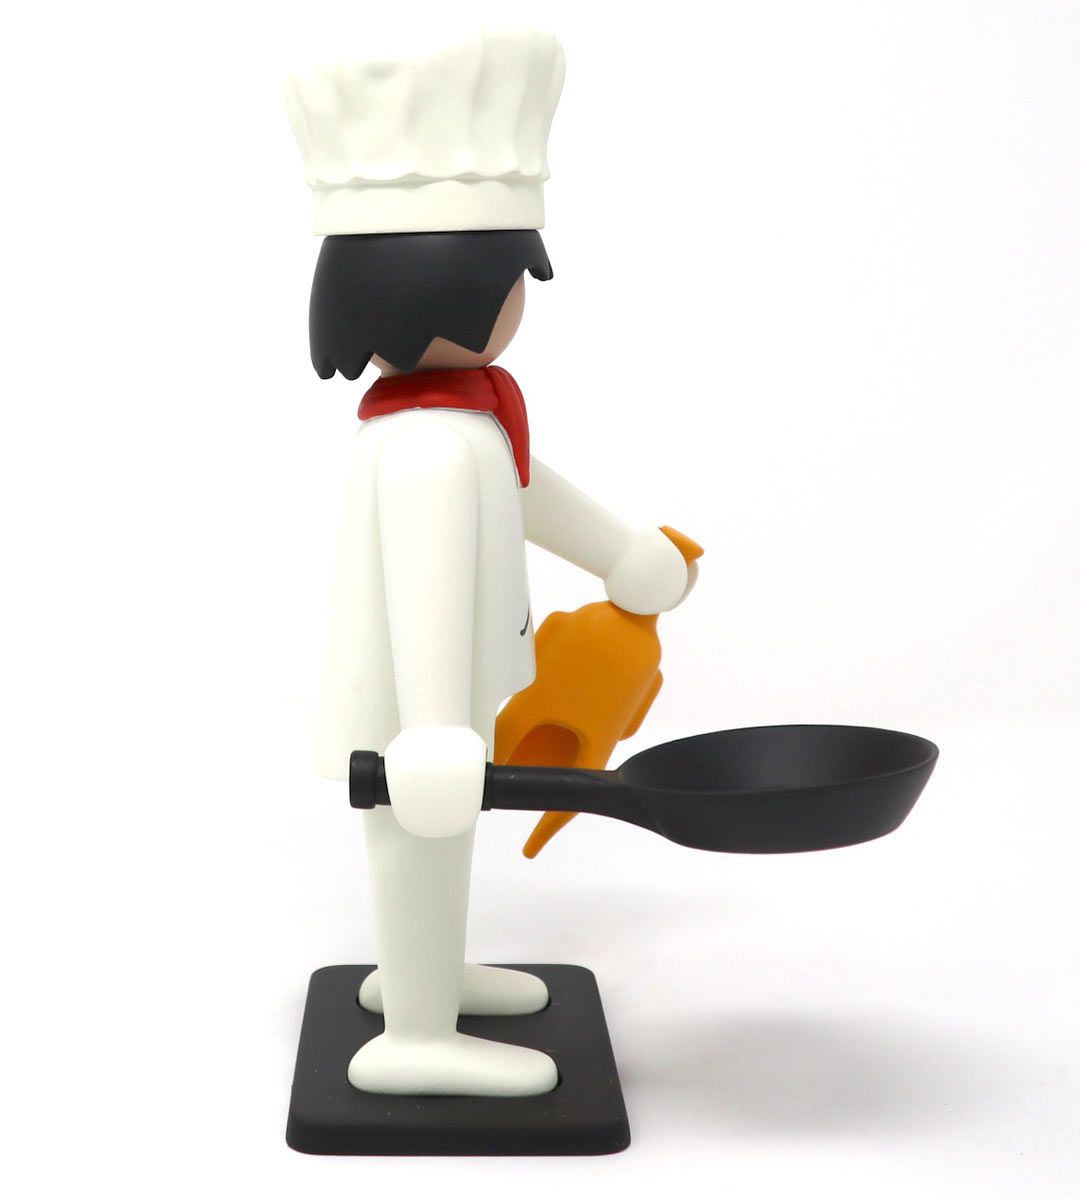 Playmobil - Le Cuisinier